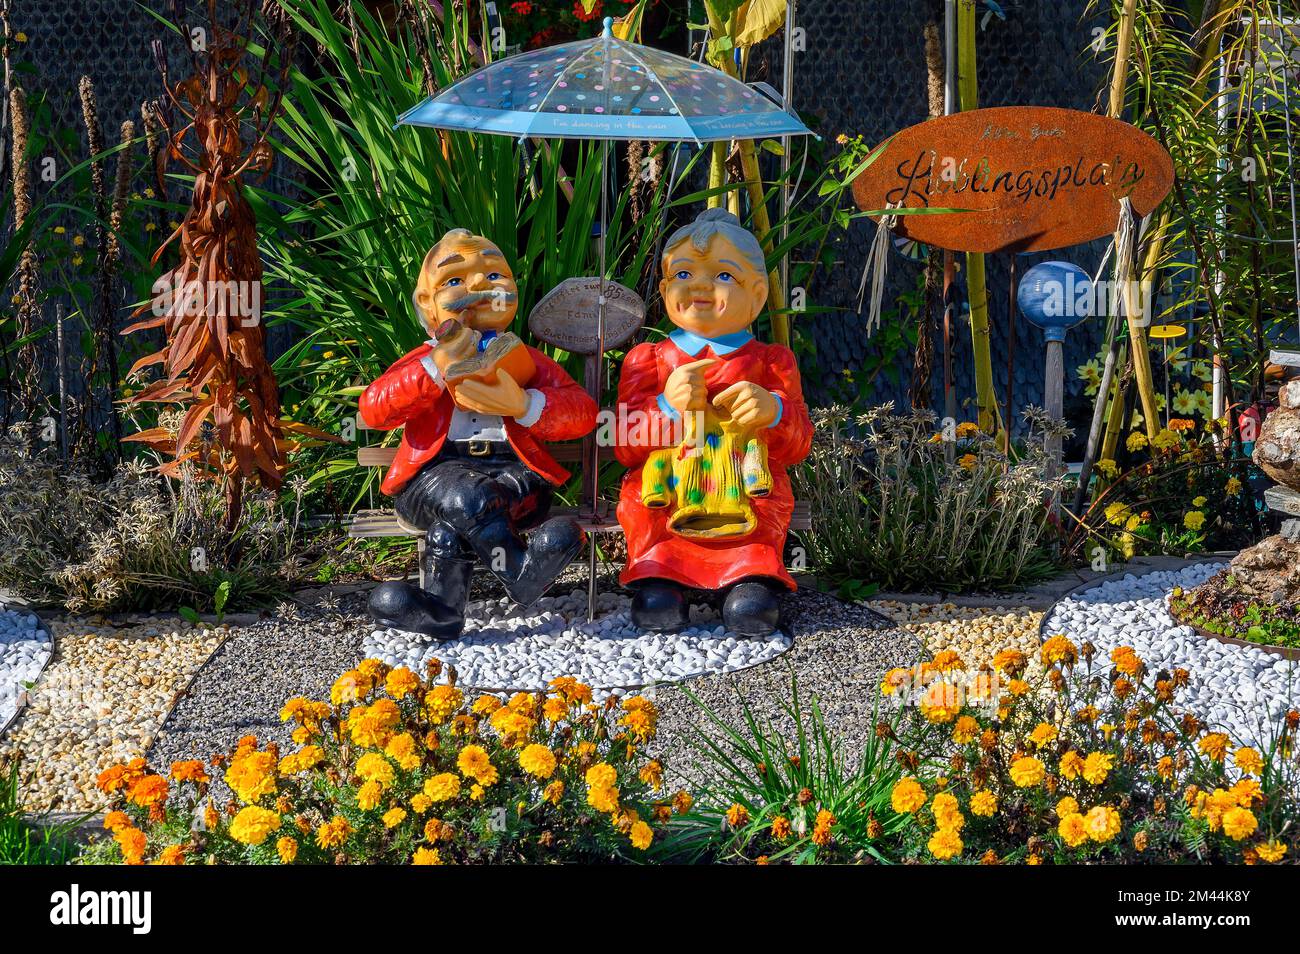 Dorfidyll, Keramikfiguren von Oma und Opa mit Blumendekorationen, Allgaeu, Bayern, Deutschland Stockfoto